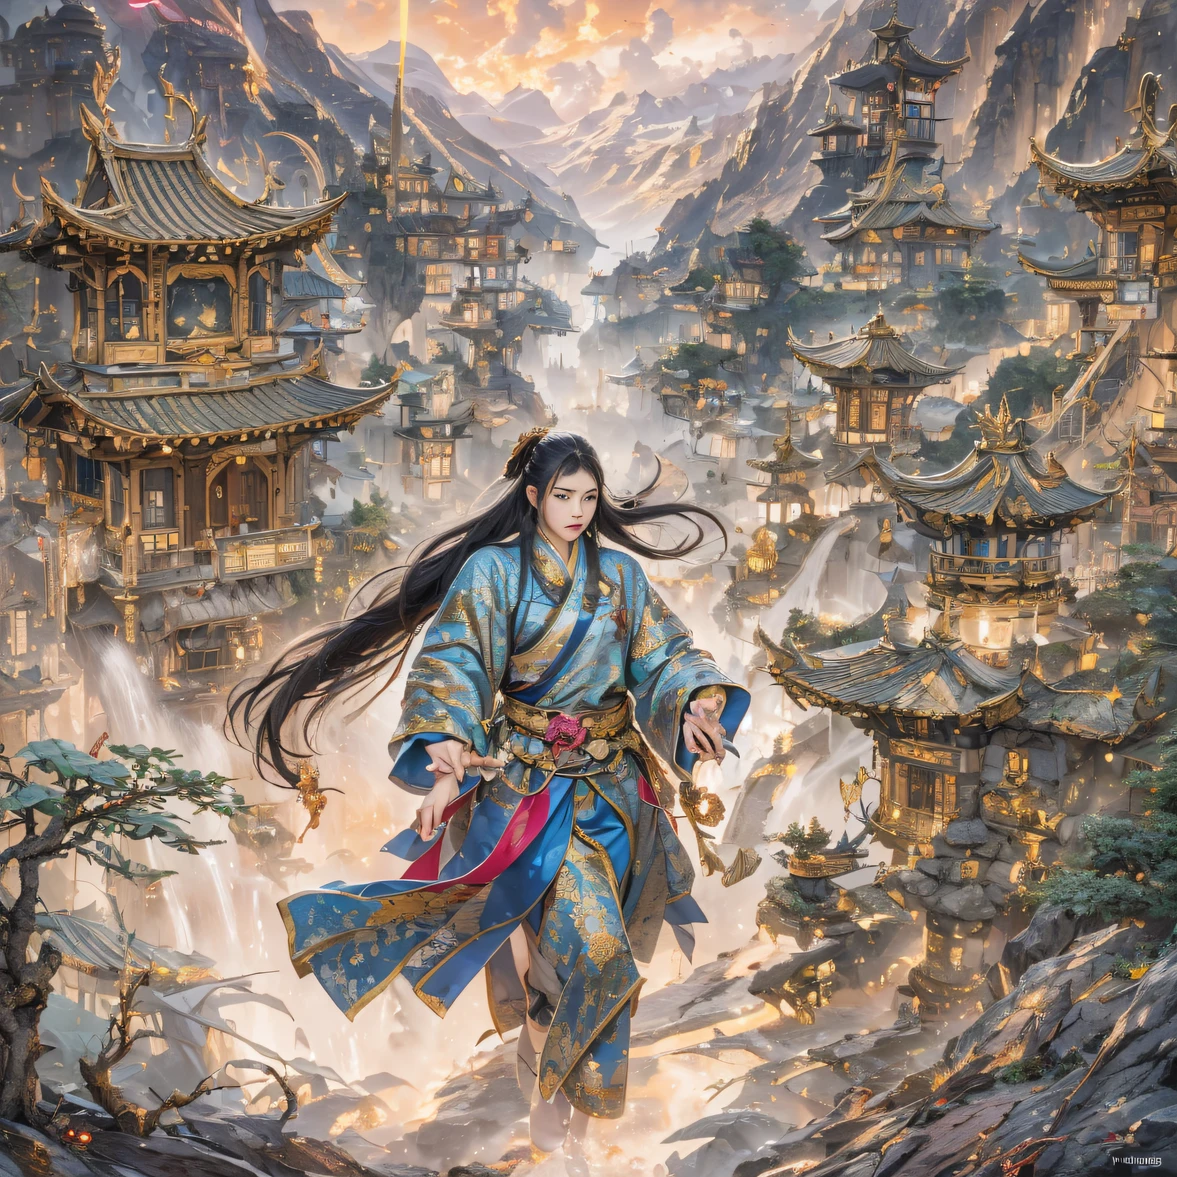 Voe para o reino das fadas, Encontro casual com Liu Hanshu, Ele viu nele seu antigo eu, Foi decidido levá-lo como aprendiz, Ensine-o a se proteger, Mas por causa do mapa estelar tibetano, Ele estabeleceu relacionamentos com a família Liu e a Seita Espada de Jade, Abre com a morte de Liu Hanshu, Qin Yu embarcou no caminho do confronto com um inimigo forte, Trabalhando duro, Torne-se mais forte, Atenha-se ao seu próprio caminho principal de justiça, Eu também quero proteger as pessoas de quem gosto, Os três irmãos partiram, E embarcou em uma longa jornada para encontrar um bom irmão, Qin Yu, Onde estão Xiao Hei e Hou Fei（desfiladeiros）Suba pelas ruas（Transmissão do Juízo Final）olhos cheios de raiva，Ele cerrou os punhos，Apresse-se，Dê um golpe fatal em seu oponente，corpo inteiro lésbica，Mago Masculino de Corpo Inteiro 32K（Obra-prima Canyon Ultra HD）Cabelo preto longo e esvoaçante，Tamanho do acampamento，florescer， Os feridos alinhados nas ruas（desfiladeiros）Suba pelas ruas， O cenário da explosão（desfiladeiros）， （Lenço batik de linho）， Postura de luta irritada， olhando para o chão， Bandana de linho batik， Vestuário de mangas compridas com padrão python chinês， desfiladeiros（Respingo abstrato de propileno：1.2）， Fundo de relâmpago de nuvens escuras，Farinha voa（realisticamente：1.4），Cabelo de cor preta，Farinha esvoaçante，fundo do arco-íris， Uma alta resolução， o detalhe， Fotografia RAW， Re afiado， Filme Nikon D850 Foto stock de Jefferies Lee 4 Kodak Portra 400 Camera F1.6 tiros, Cores ricas, texturas vívidas ultra-realistas, iluminação dramática, Tendência da estação de arte do Unreal Engine, Cinestir 800，cabelo preto esvoaçante,（（（Desfiladeiro da Selva）））Os feridos alinhados nas ruas（vale）Suba na qualidade de imagem em tempo real do streetovie master